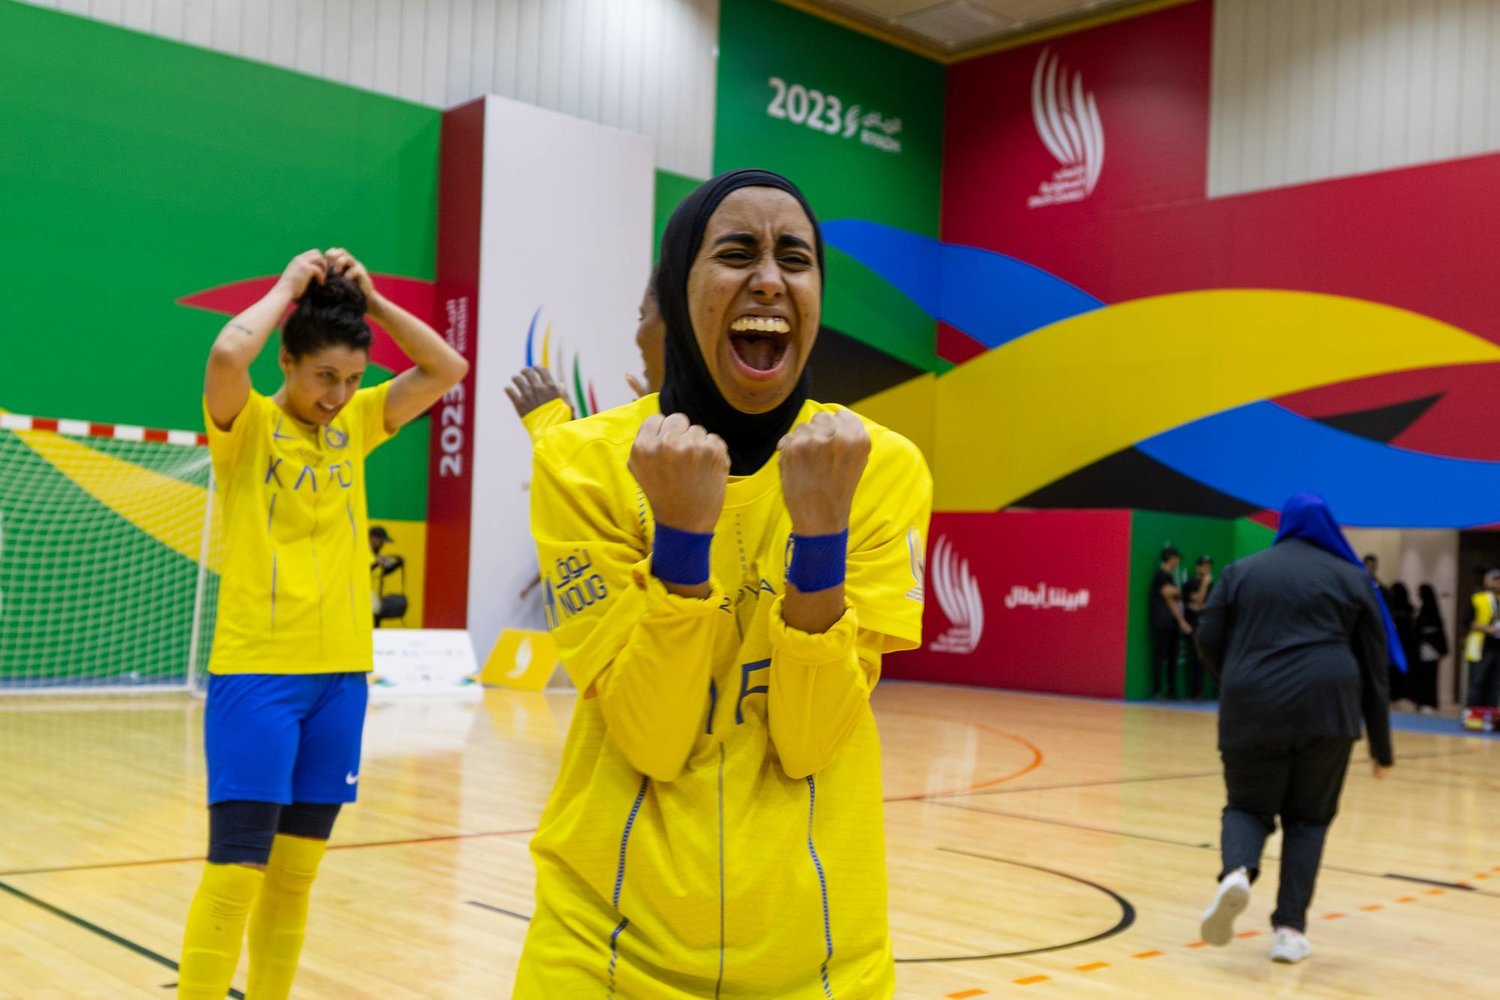 سيدات النصر أسقطن الهلال في مباراة مثيرة ضمن منافسات كرة الصالات (الشرق الأوسط)